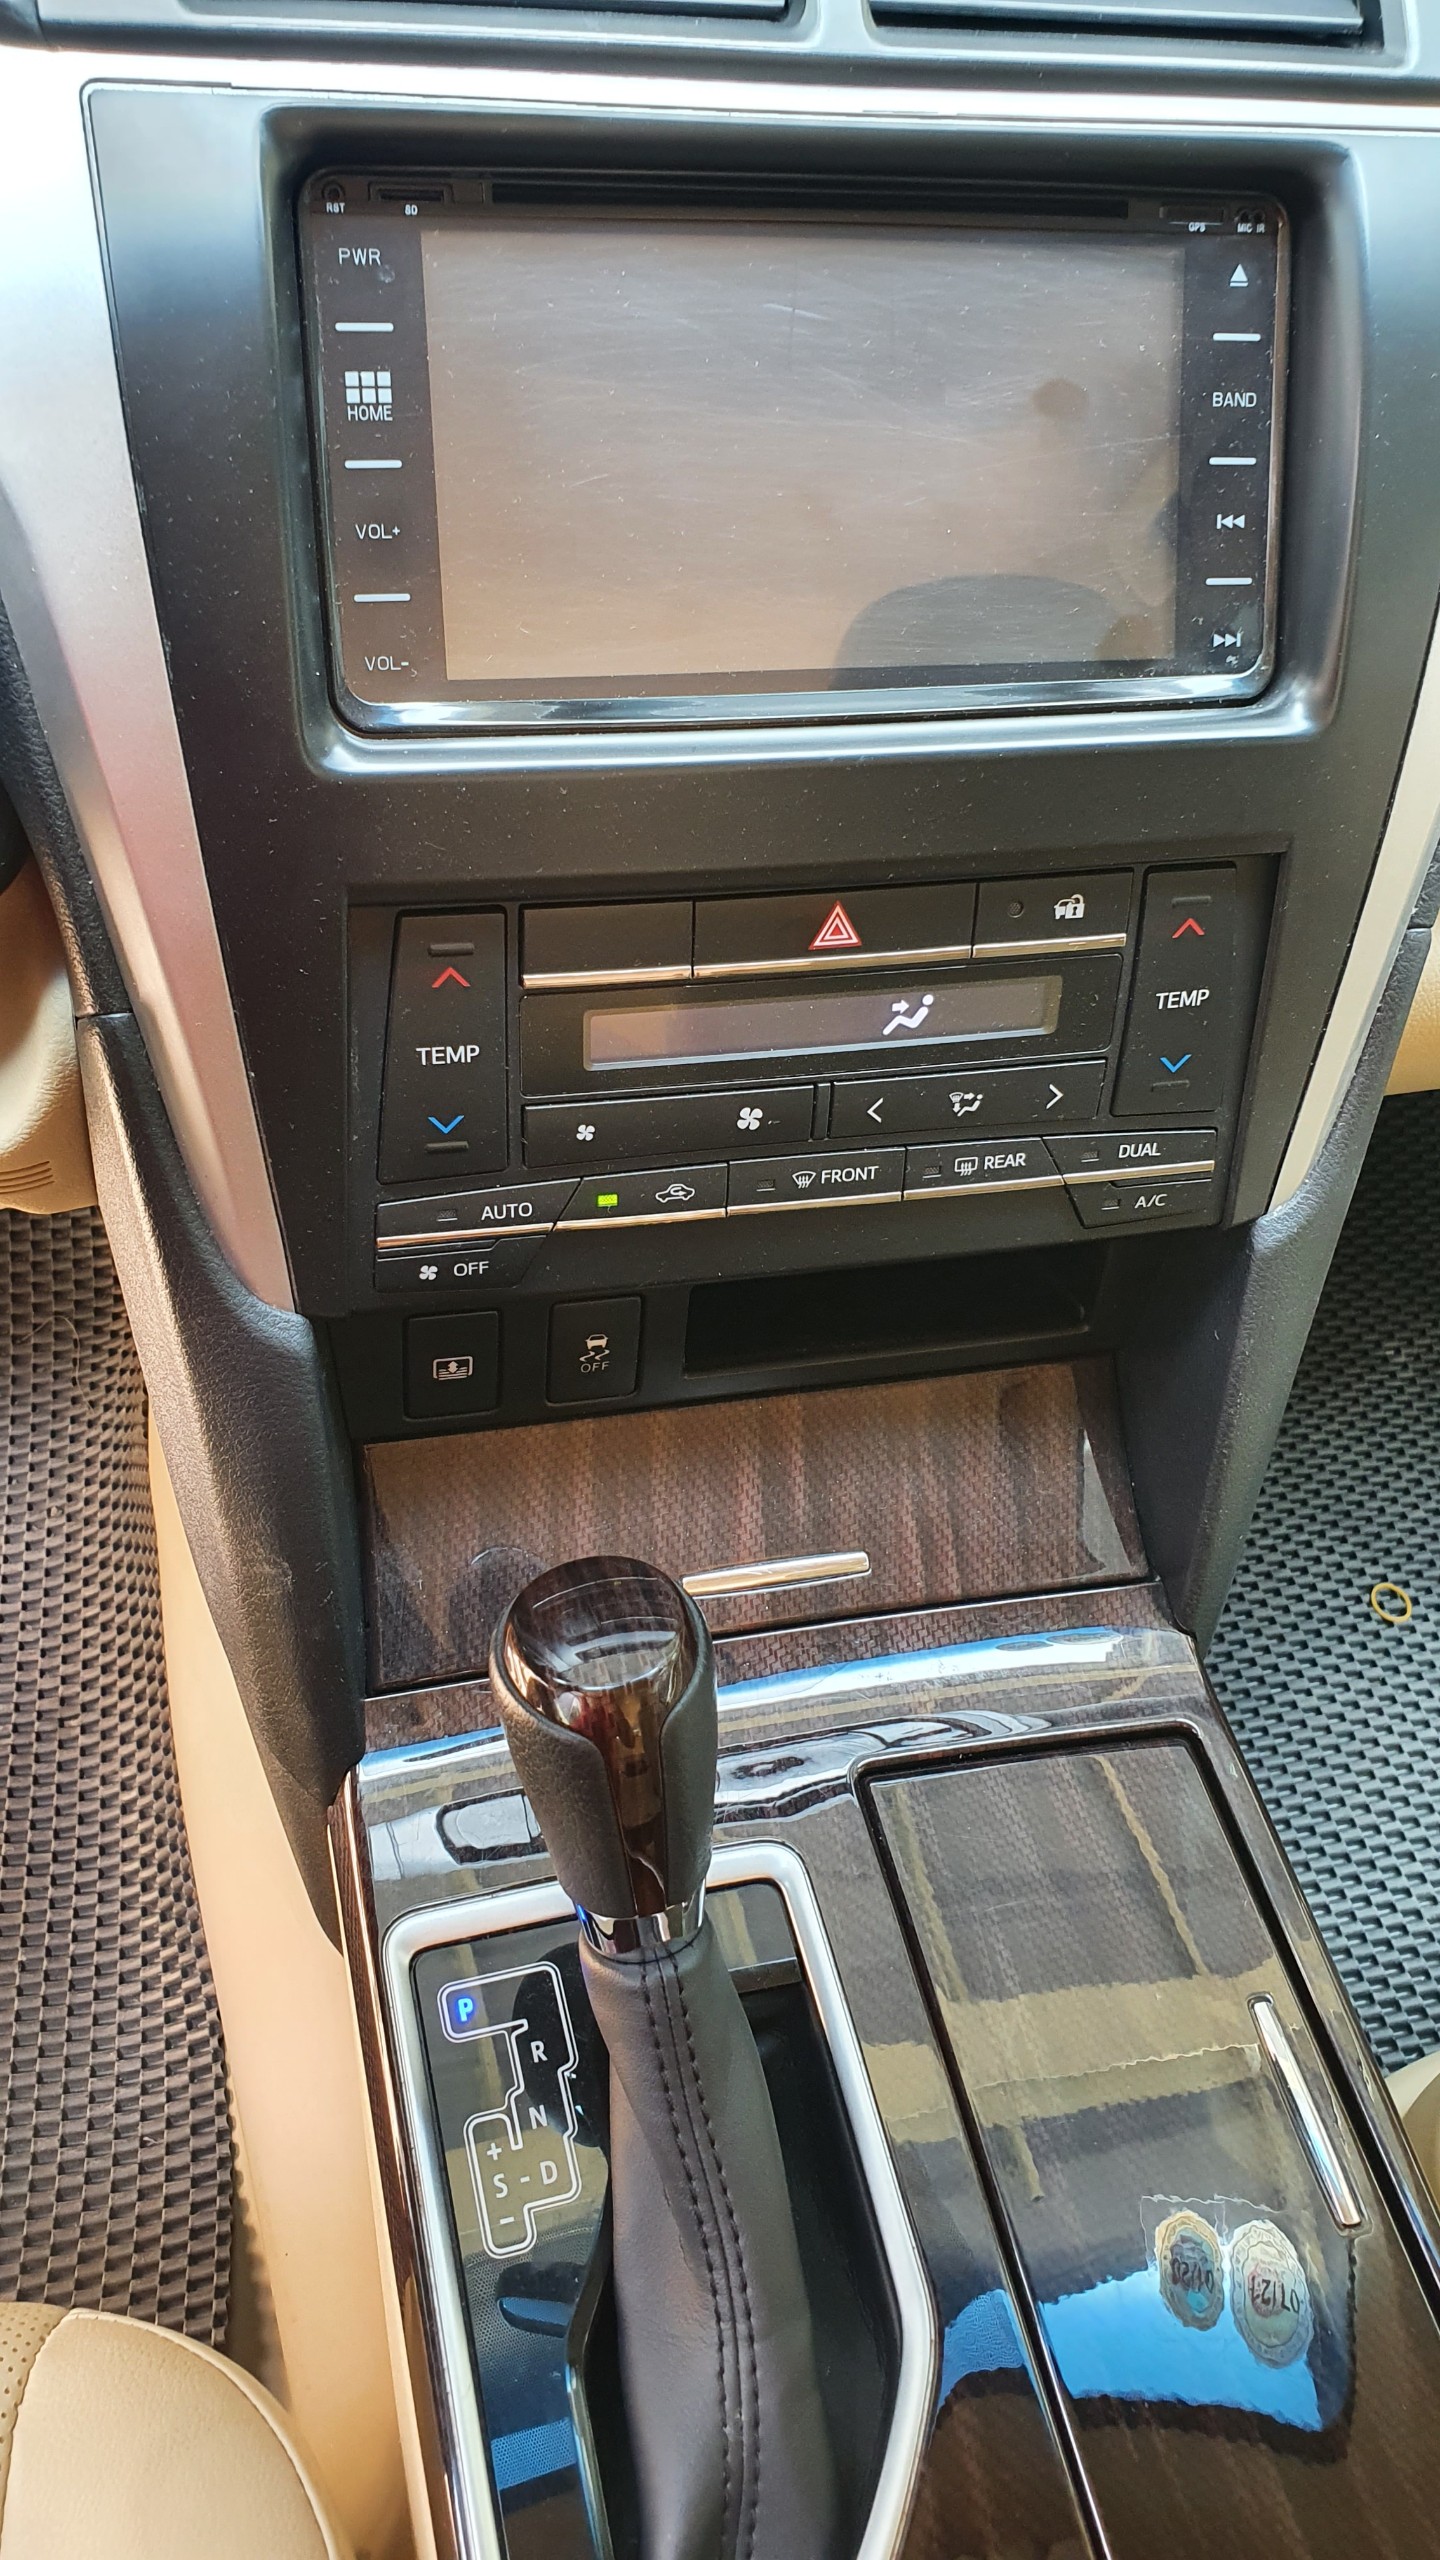 Toyota Camry 2.0E 2019 - Cần bán gấp Toyota Camry 2.0E đời 2019, màu đen, chuẩn chỉ 48.000km